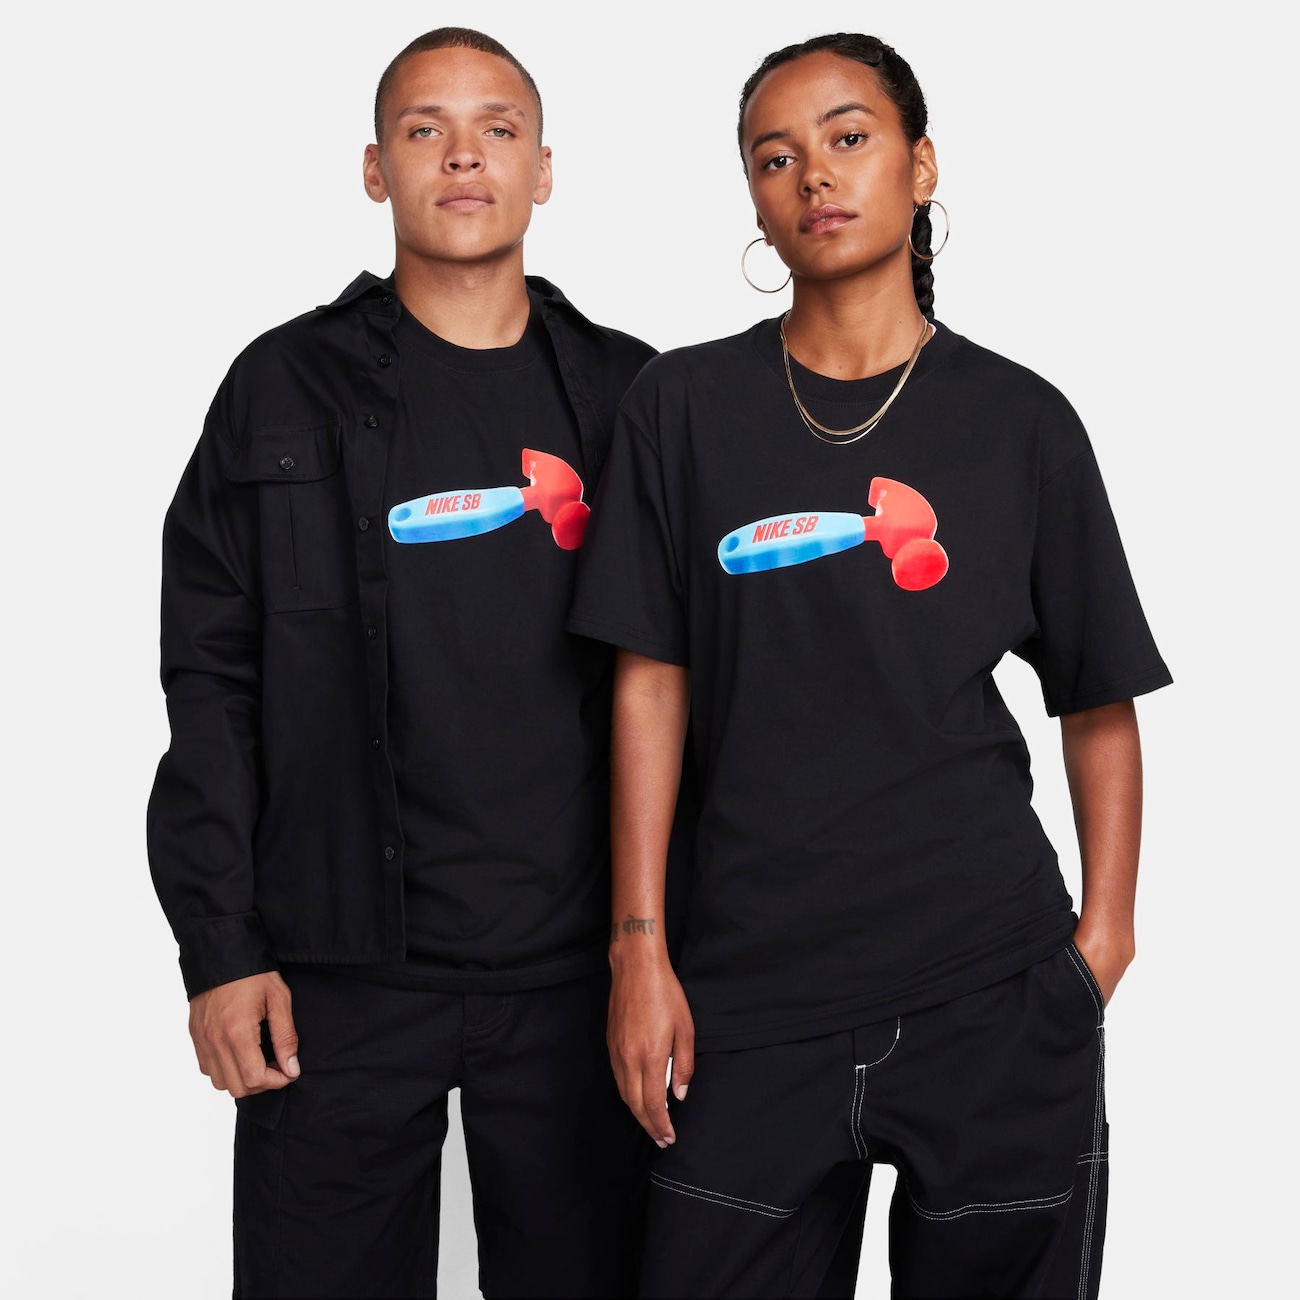 Camiseta Nike SB Masculina